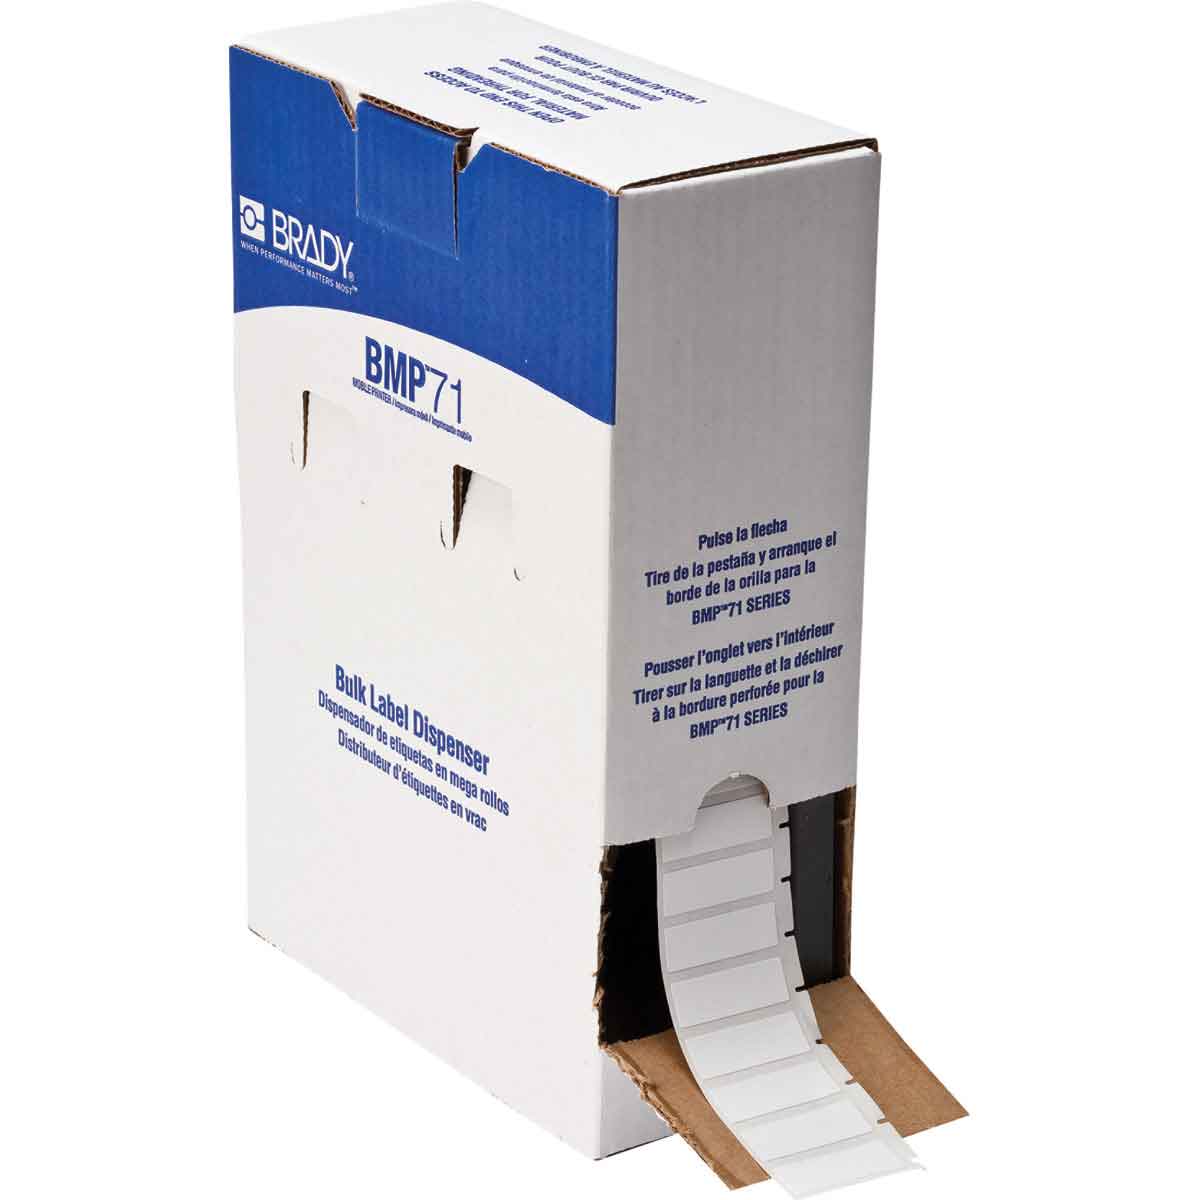 Étiquettes en tissu vinyle repositionnables en gros conditionnement pour étiqueteuses BMP71, BMP61, M611 et TLS2200